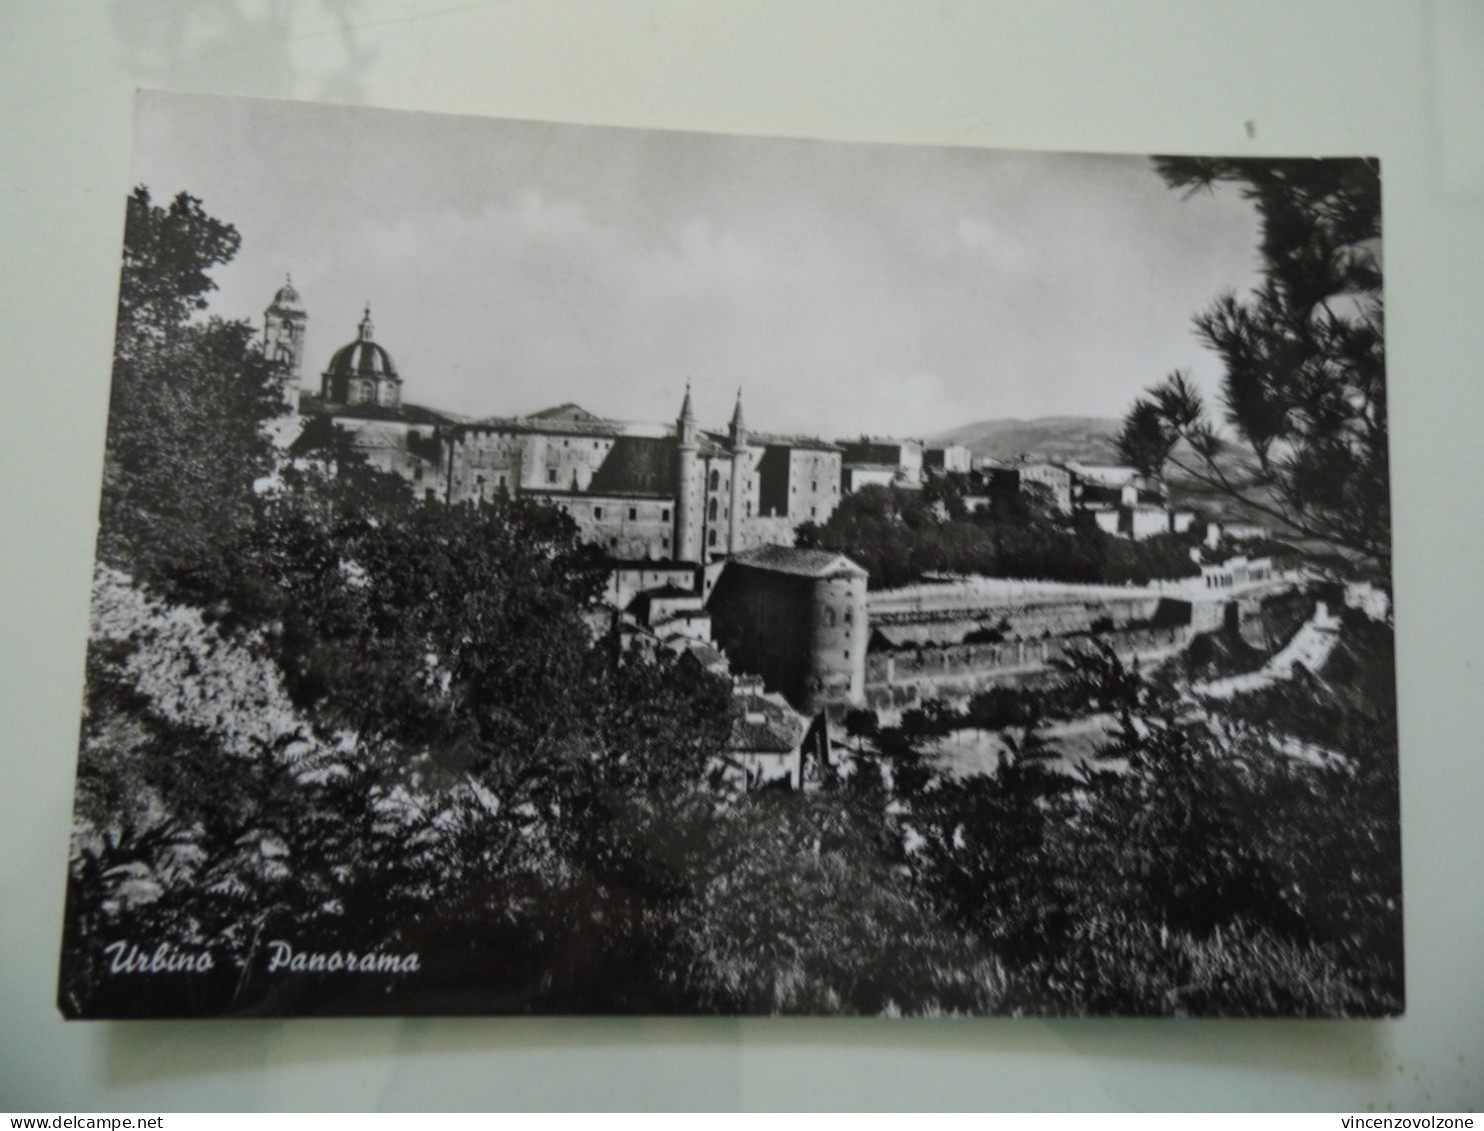 Cartolina Viaggiata "URBINO Panorama" 1966 - Urbino